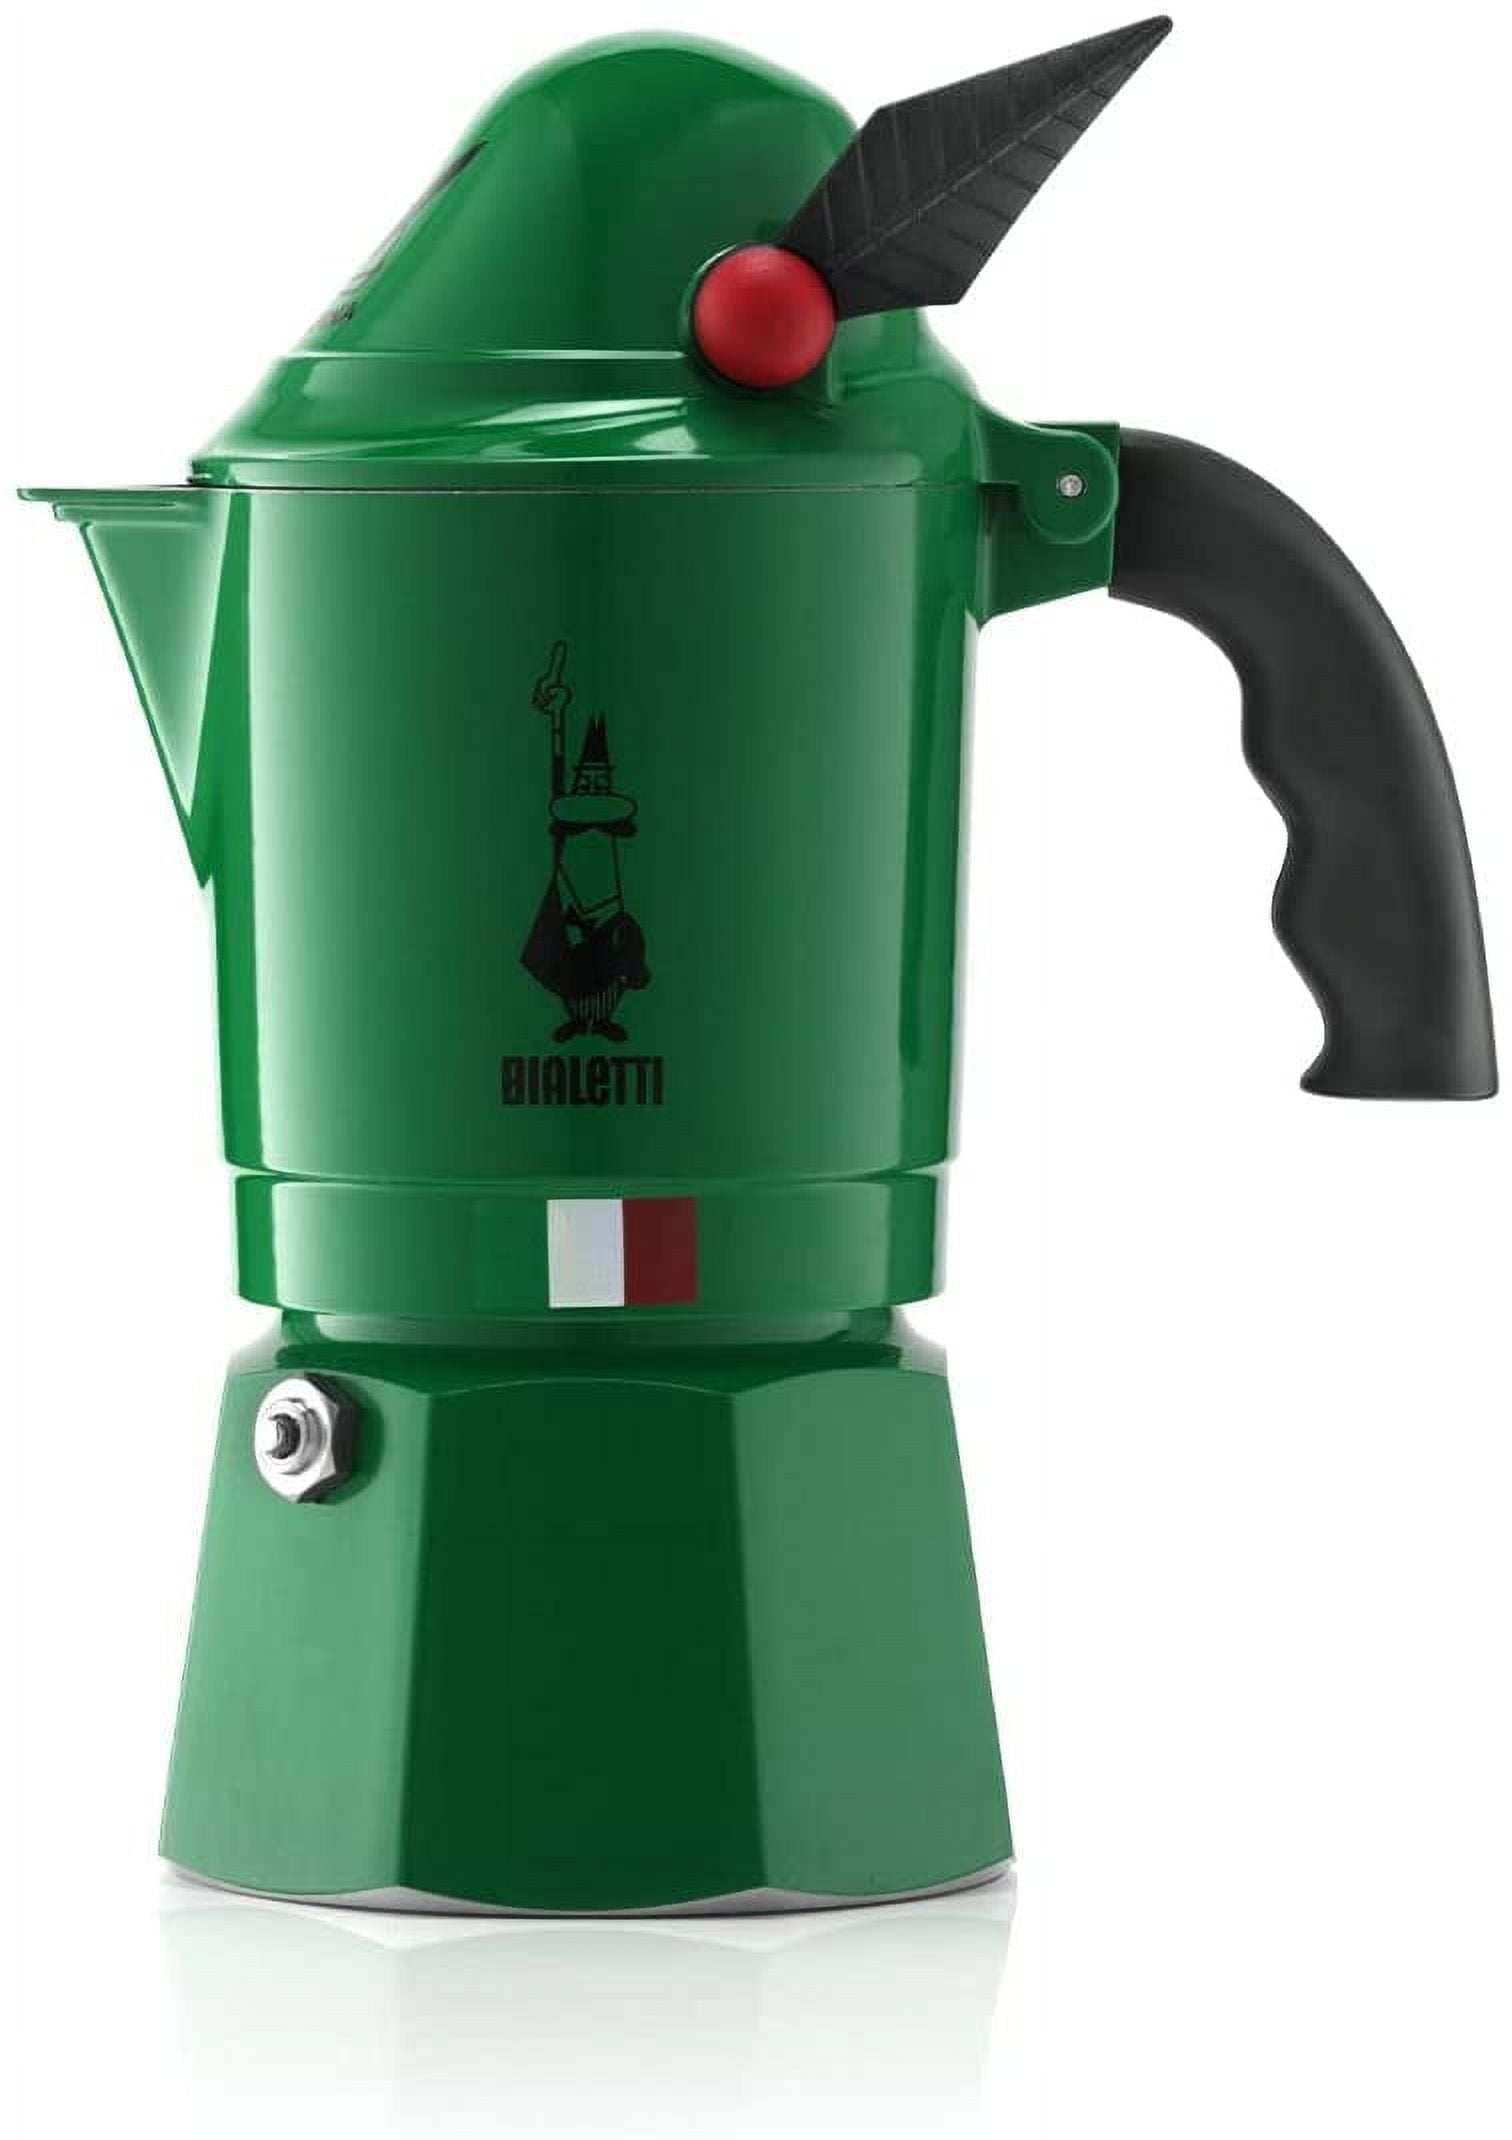 Bialetti Espresso Maker + Reviews